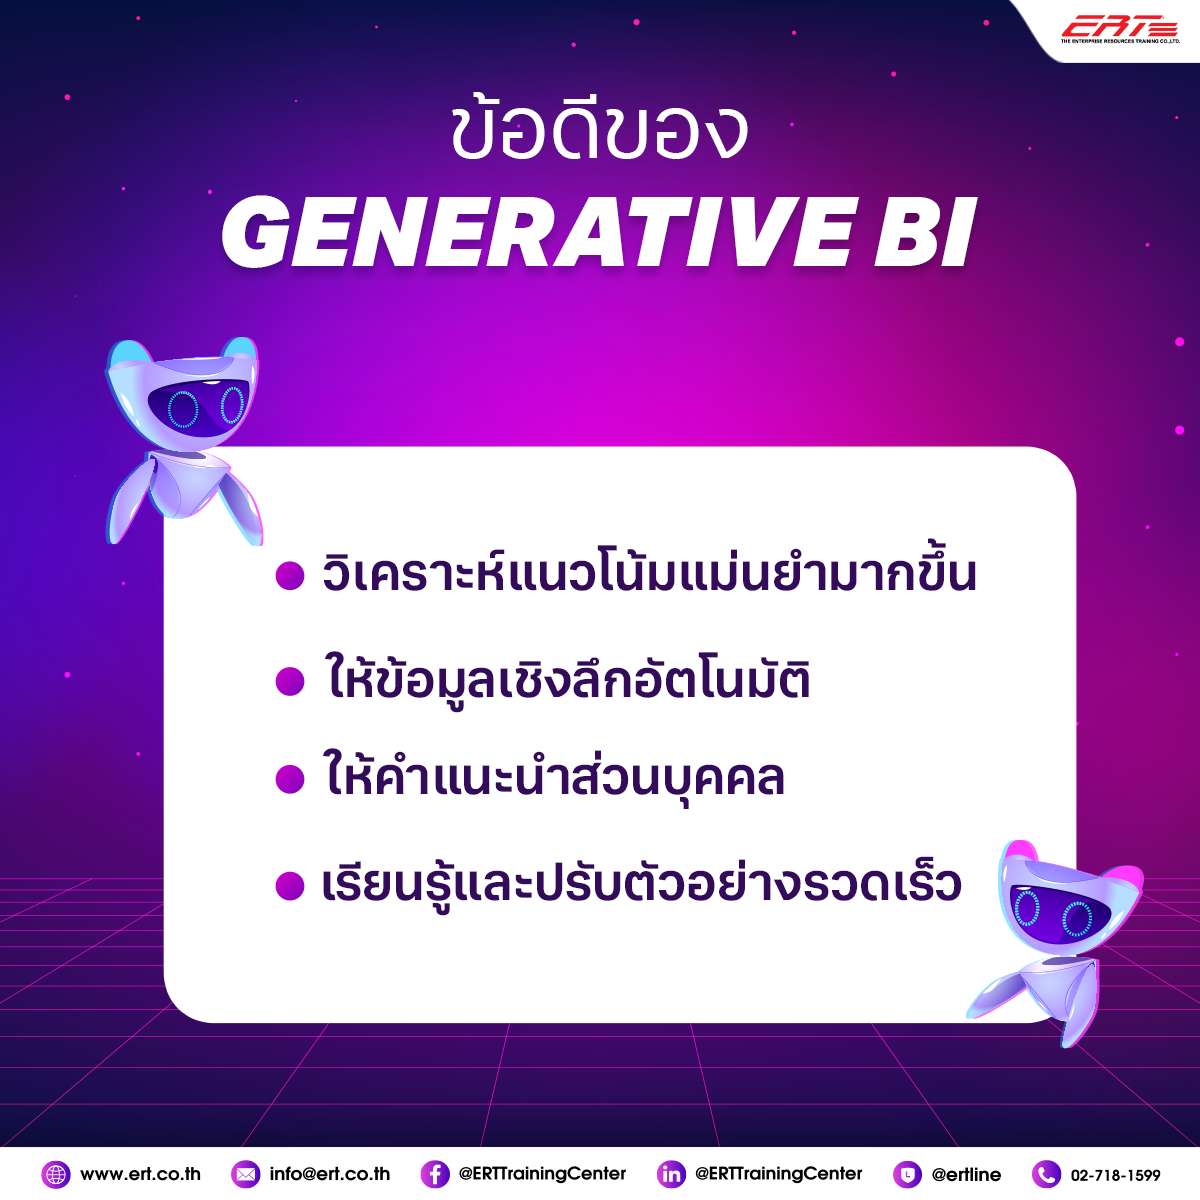 Generative BI คืออะไร